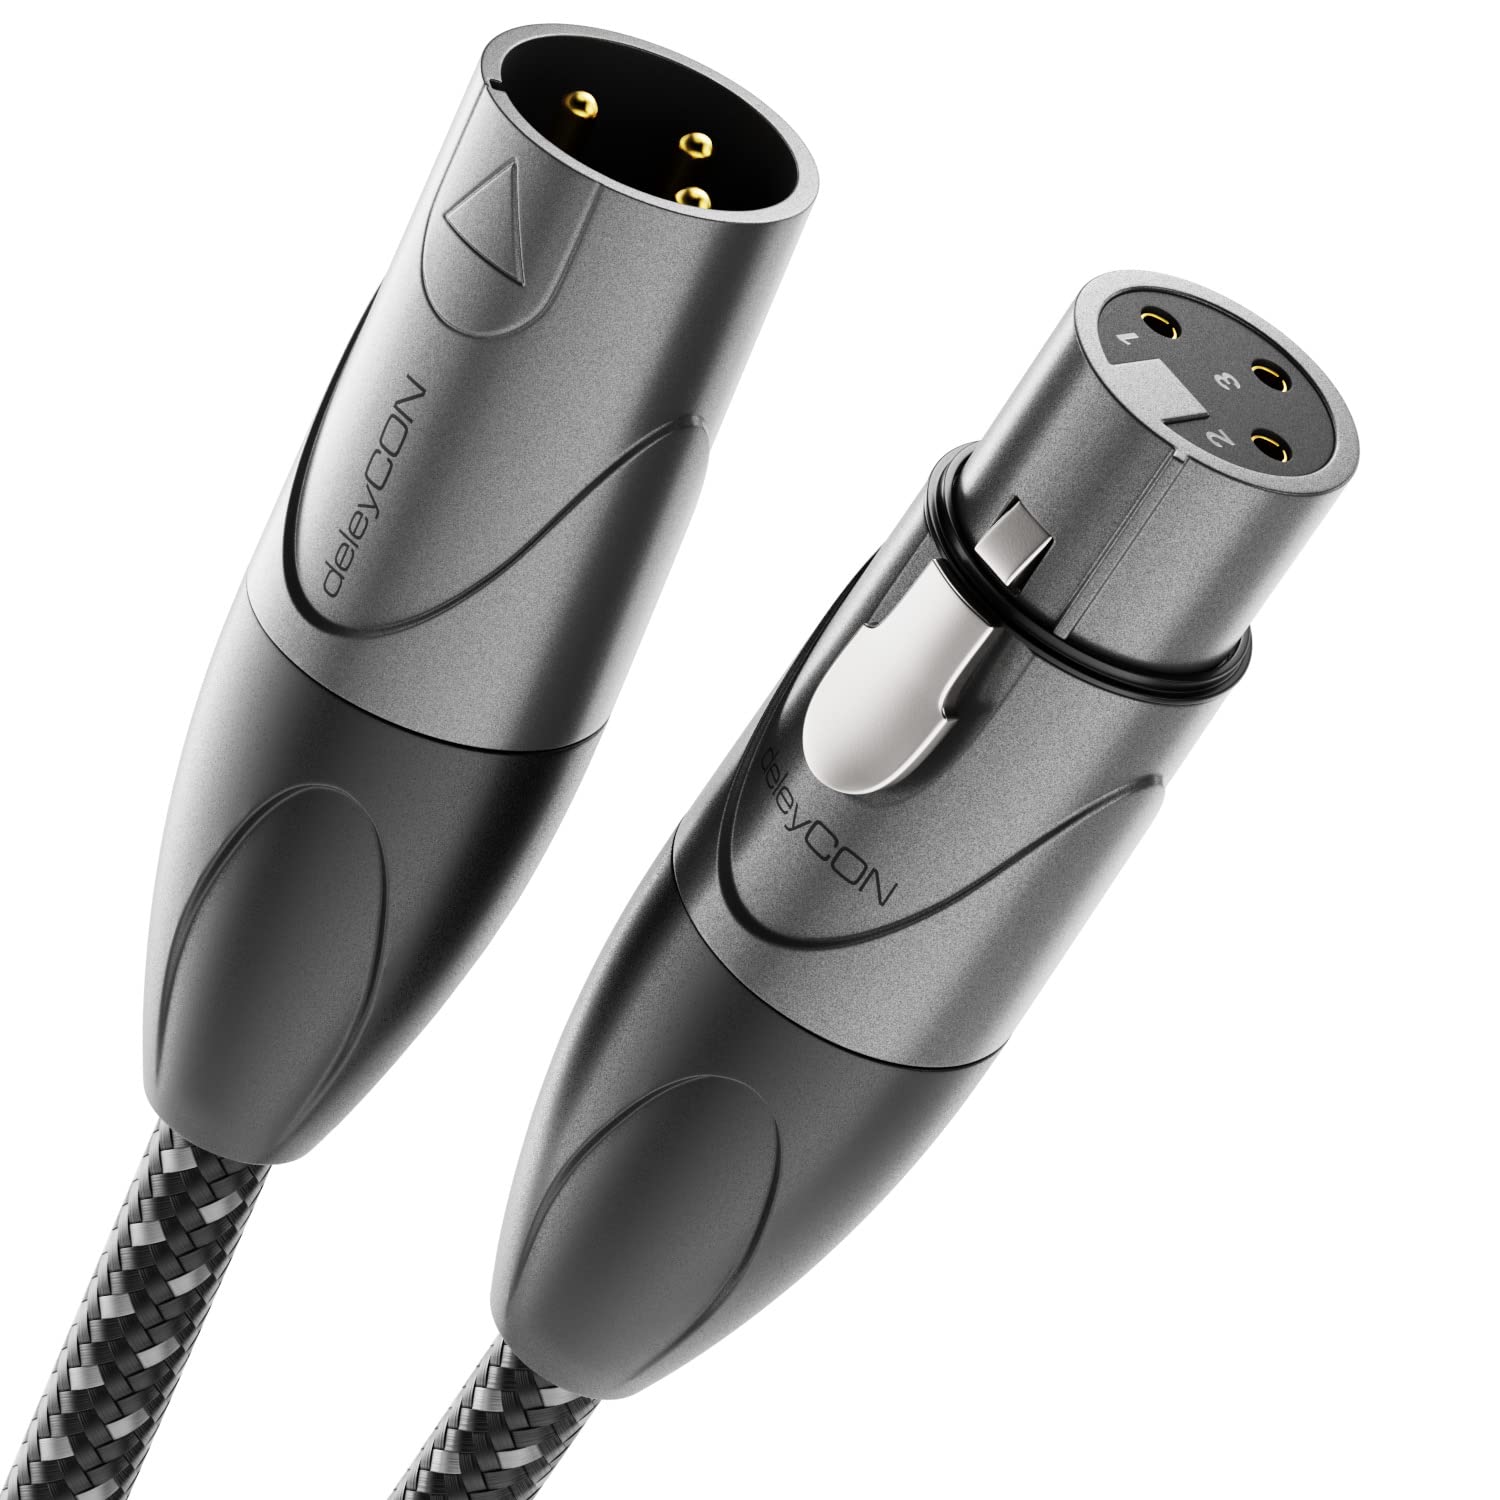 deleyCON 20m XLR Audio Kabel - Studio Qualität - aus reinem OFC Kupfer (AWG21) - Mikrofonkabel mit Baumwollmantel - mit Metallverriegelung & Vergoldeten Kontakten - 3 Polig DMX